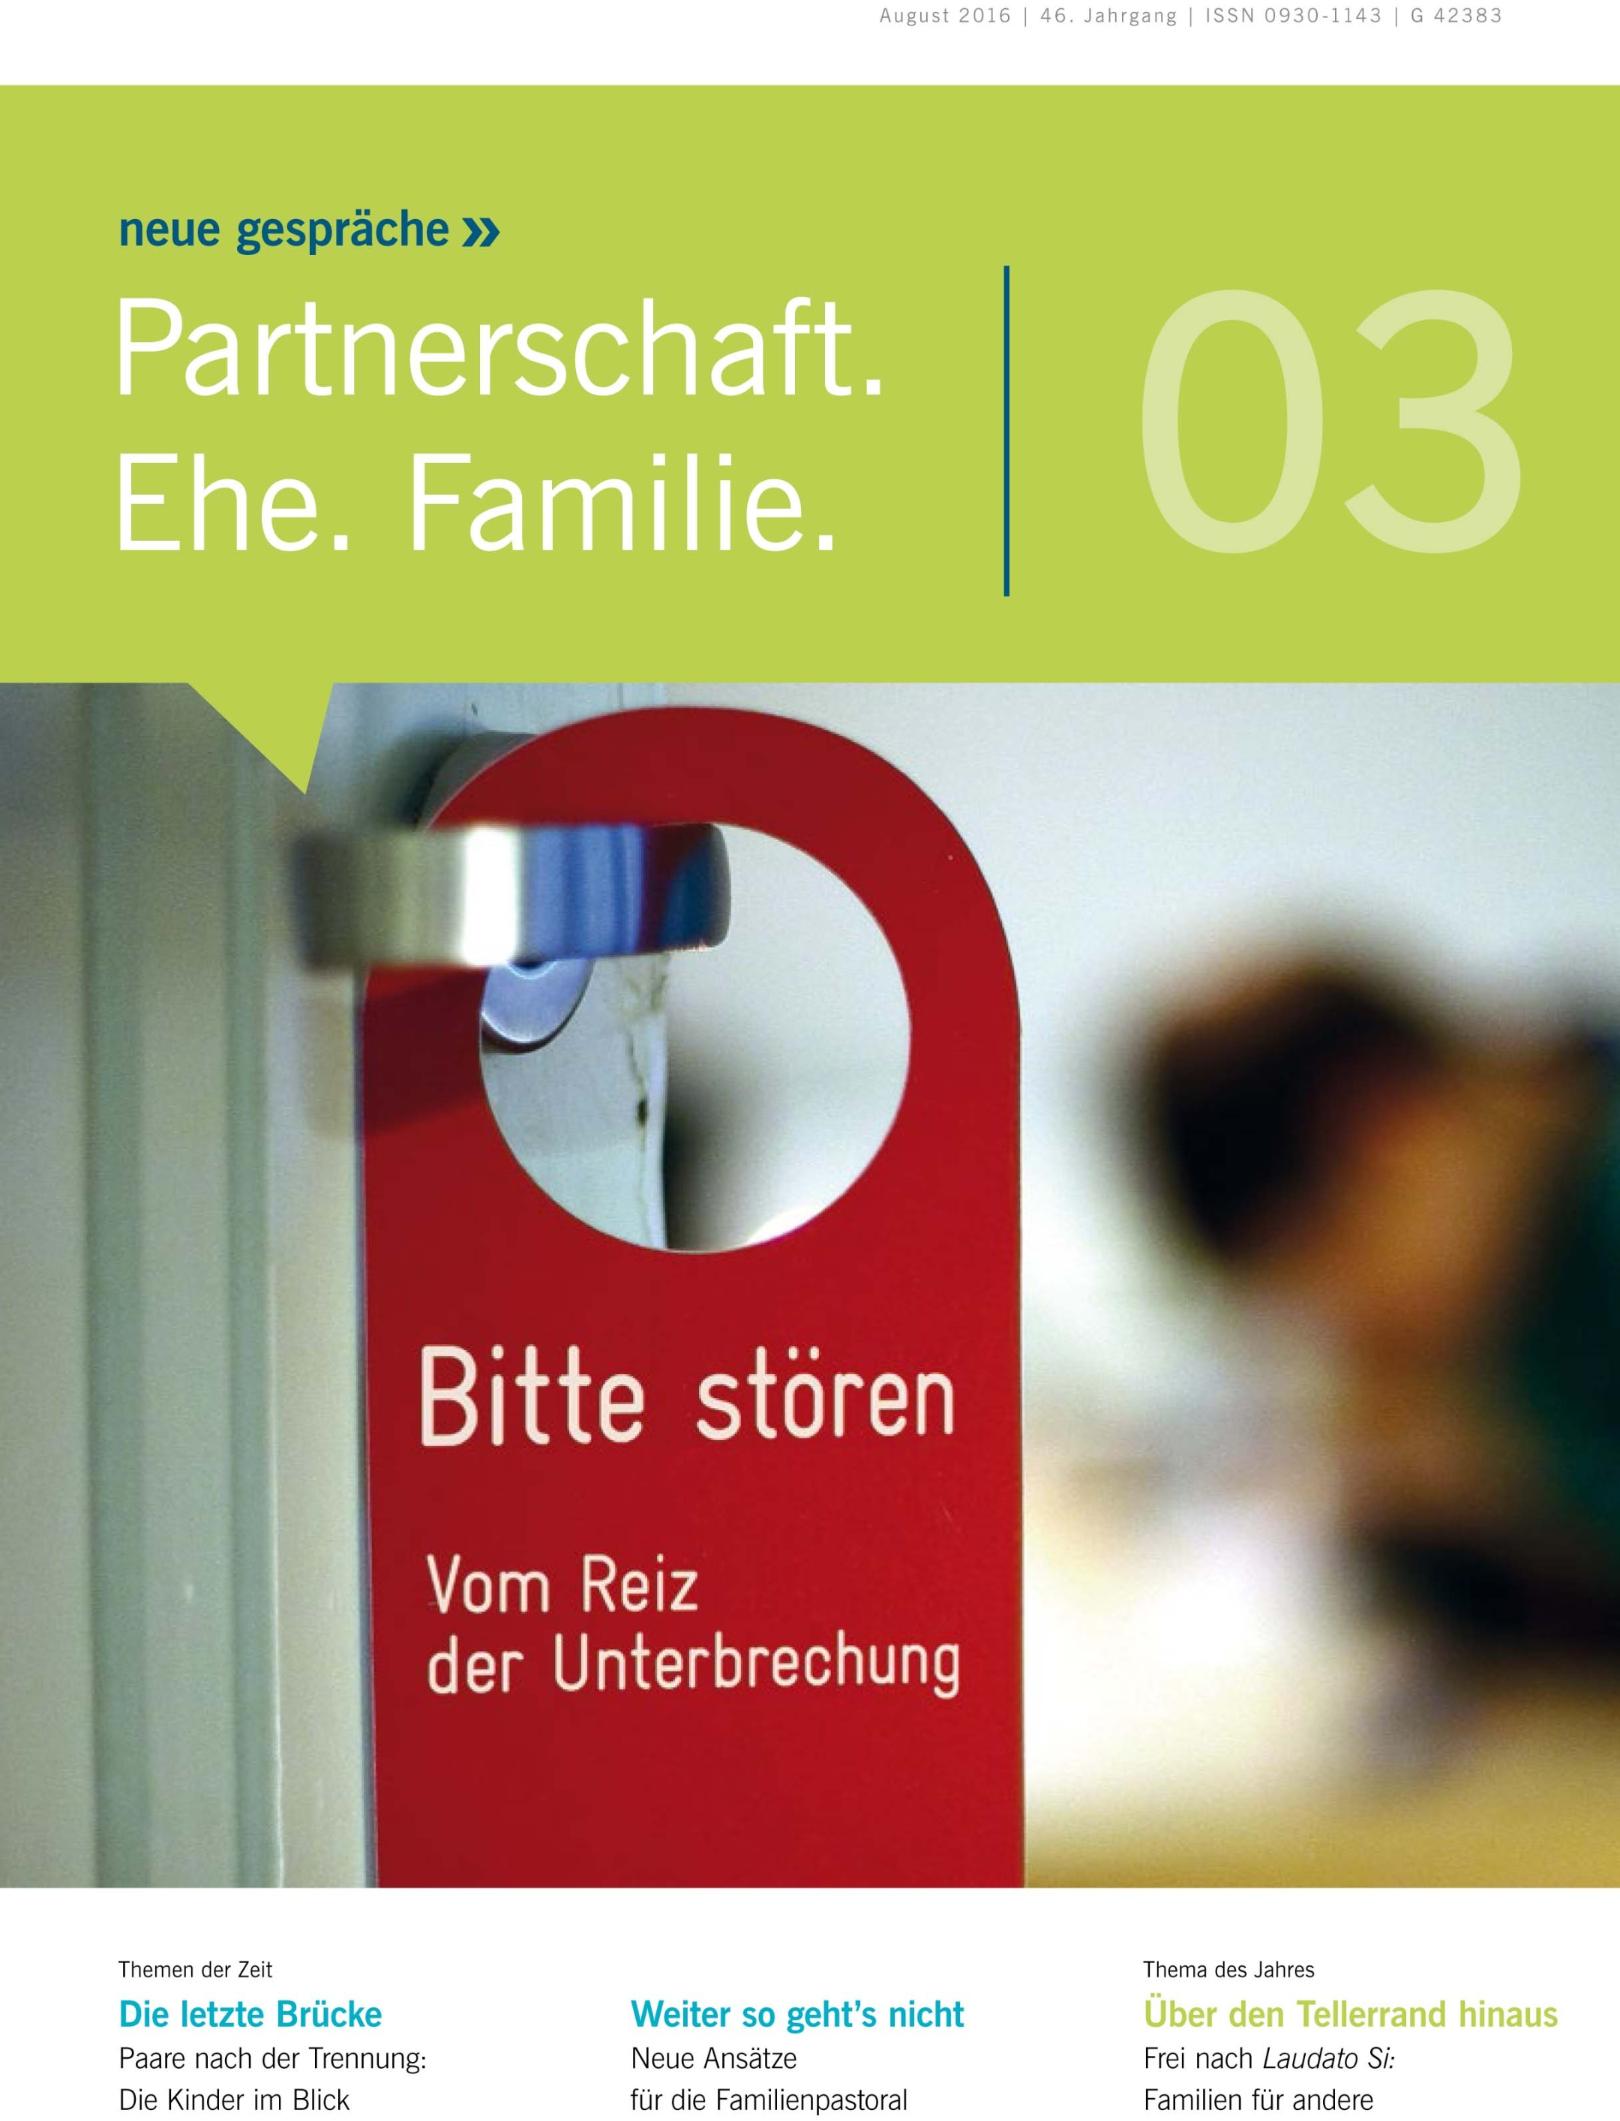 „neue gespräche: Partnerschaft - Ehe - Familie“ (c) Arbeitsgemeinschaft für katholische Familienbildung e.V.